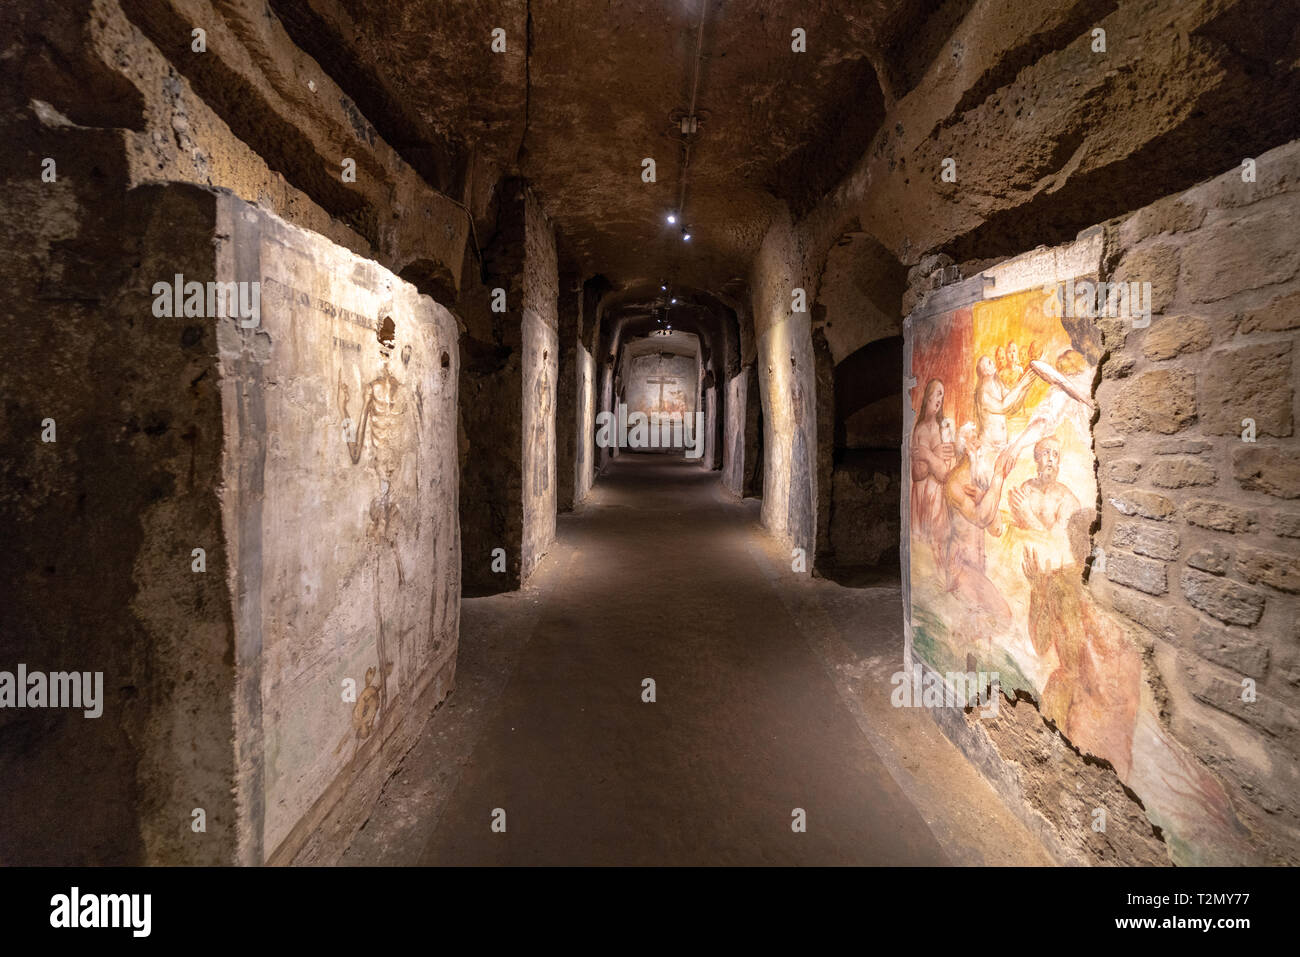 Affreschi nelle catacombe di San Gaudioso, Napoli. Corridoio dei Morti. Stock Photo